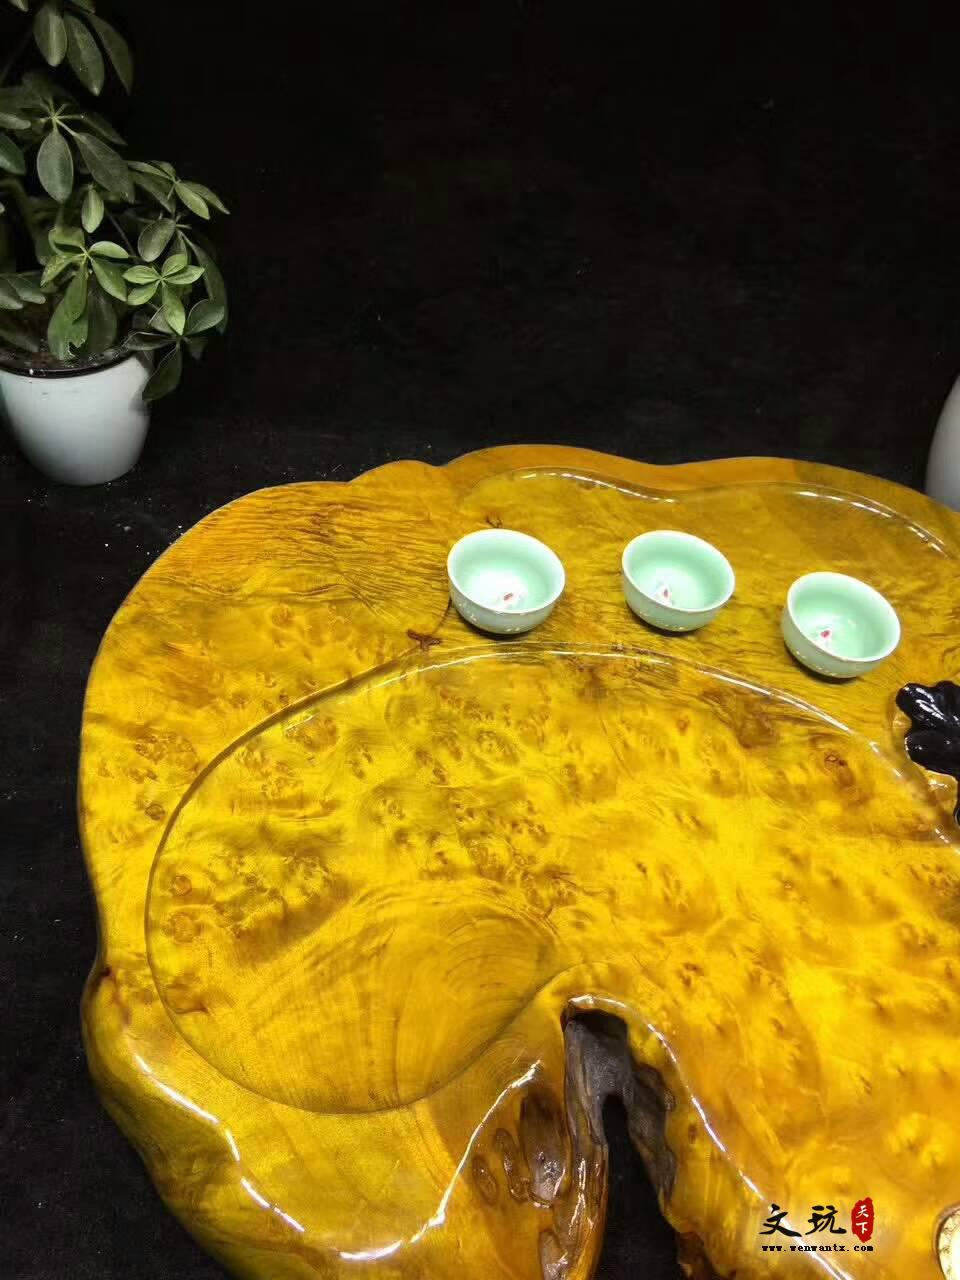 黄金樟茶桌带瘤疤 板面干净颜色金黄纹理清晰提升格调-6